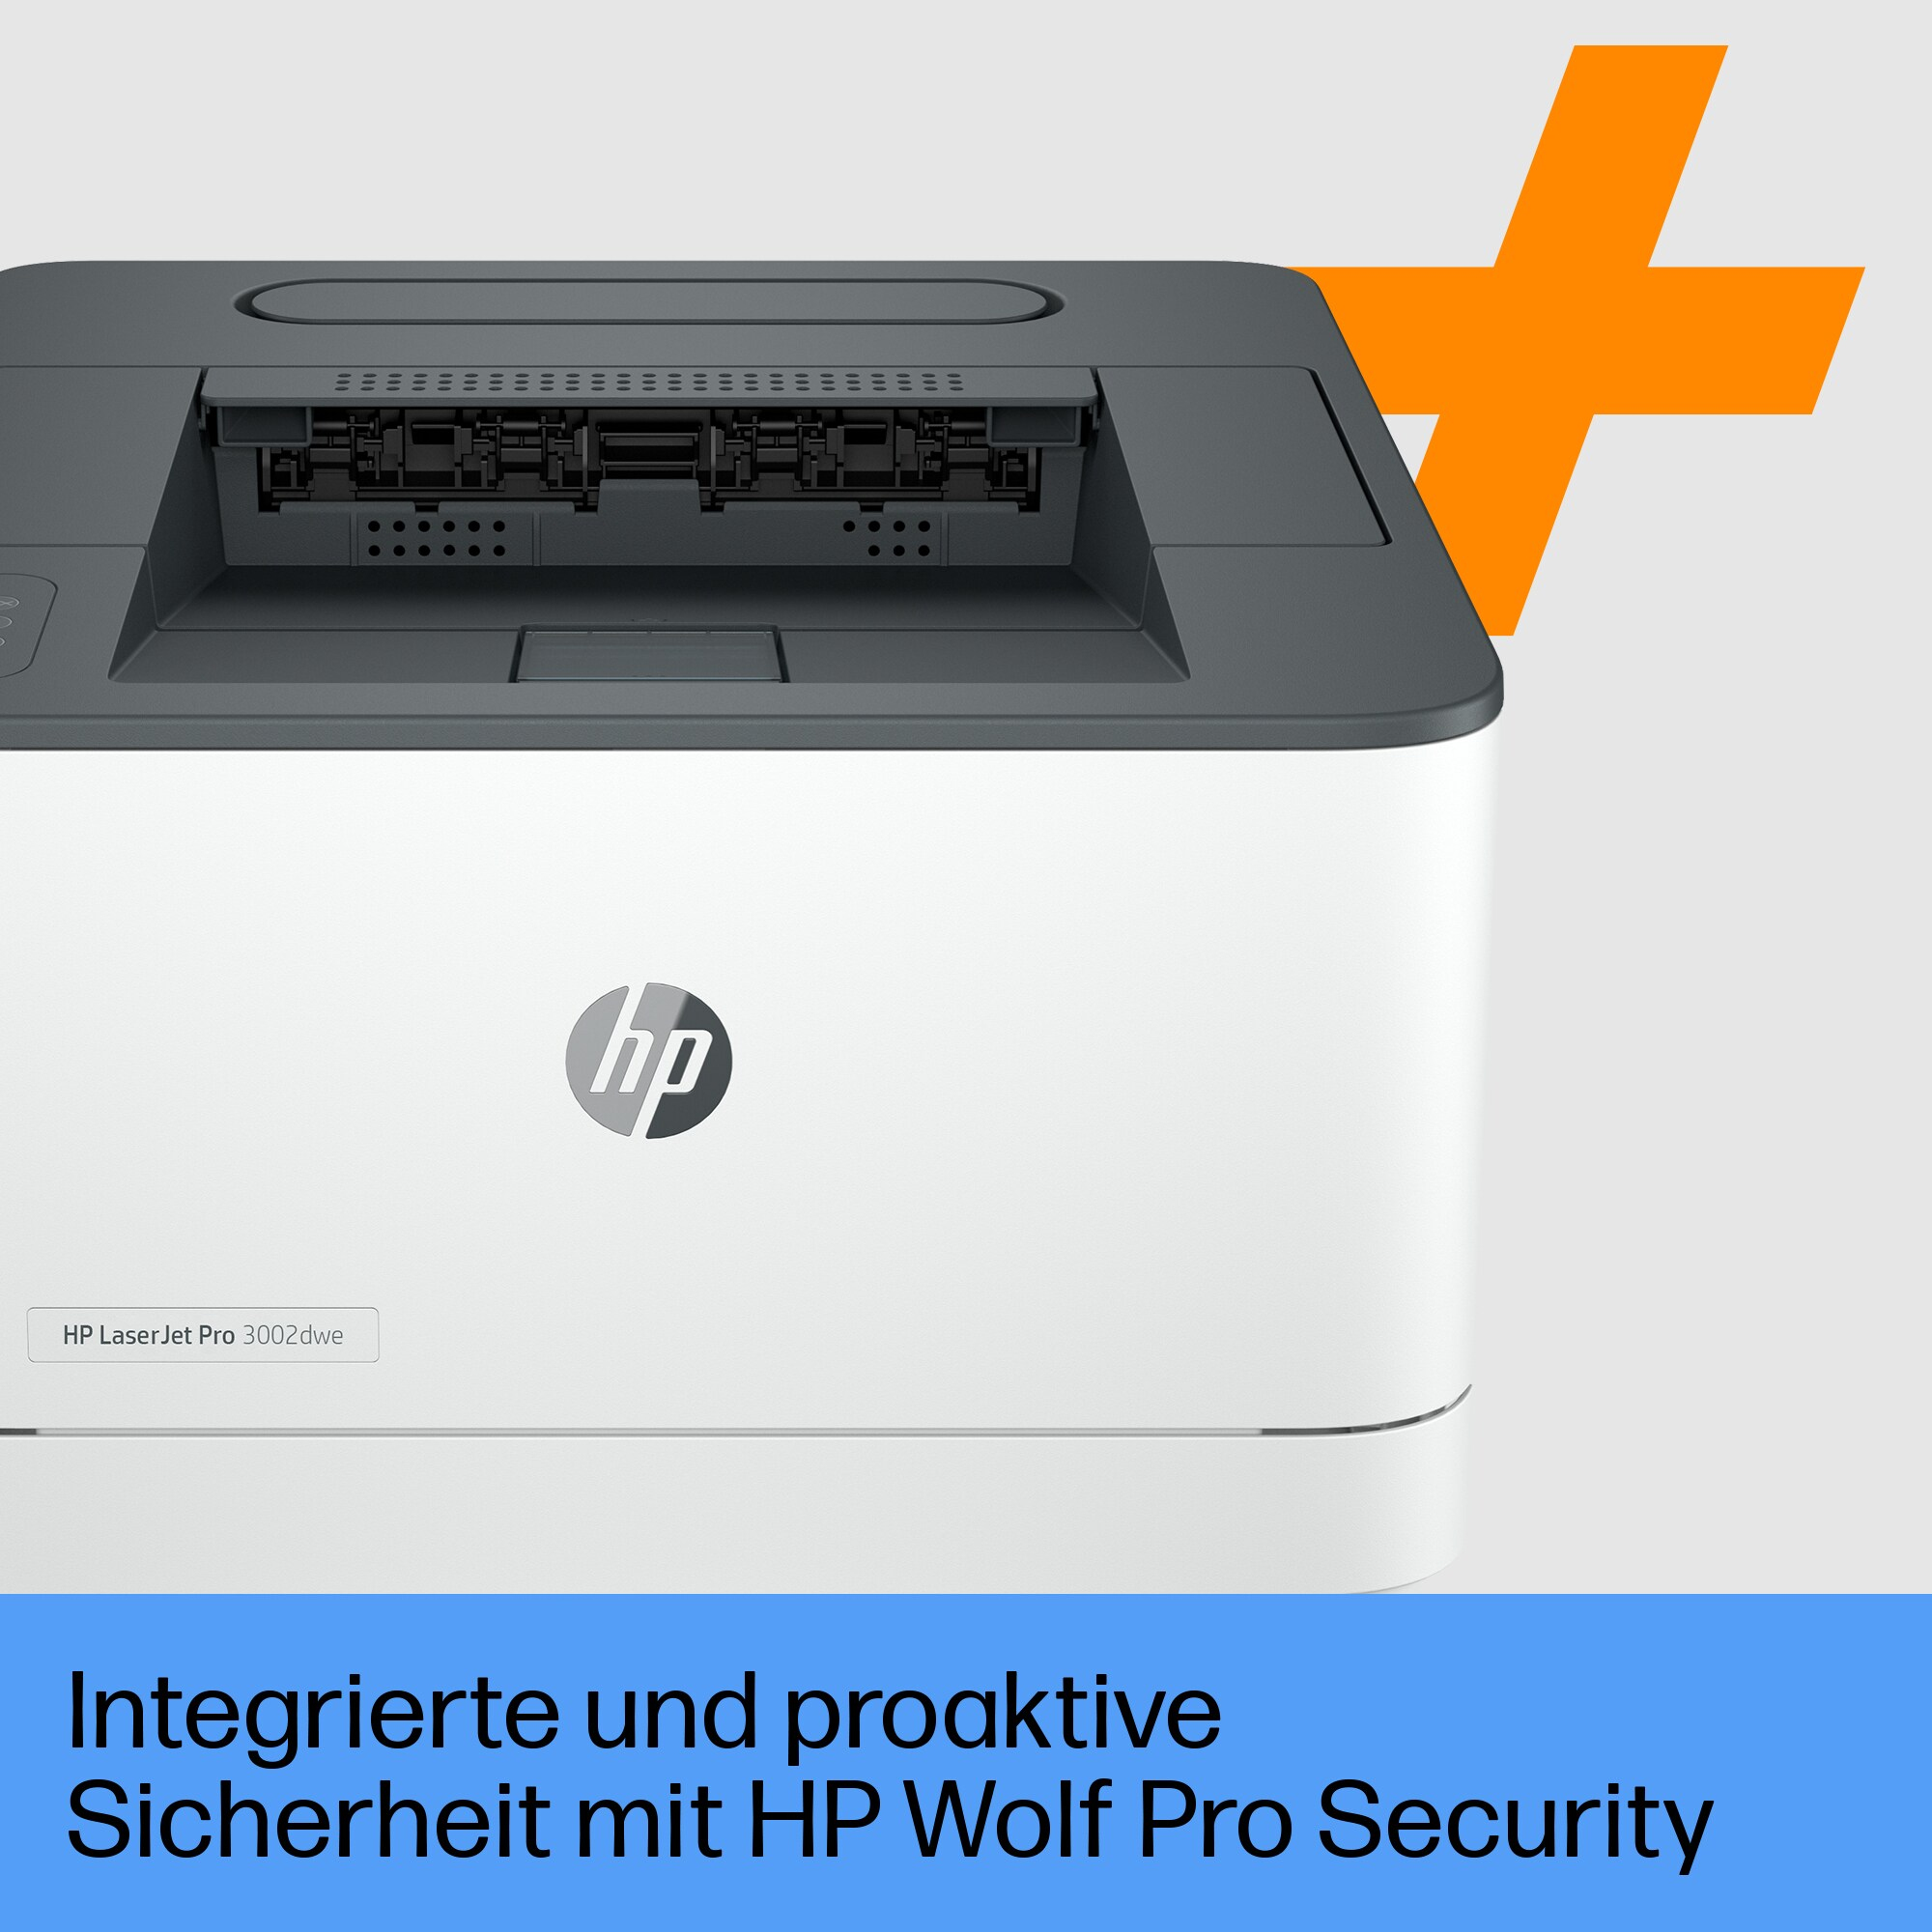 HP 3G652E#B19  HP LaserJet Pro Imprimante 3002dwe, Noir et blanc